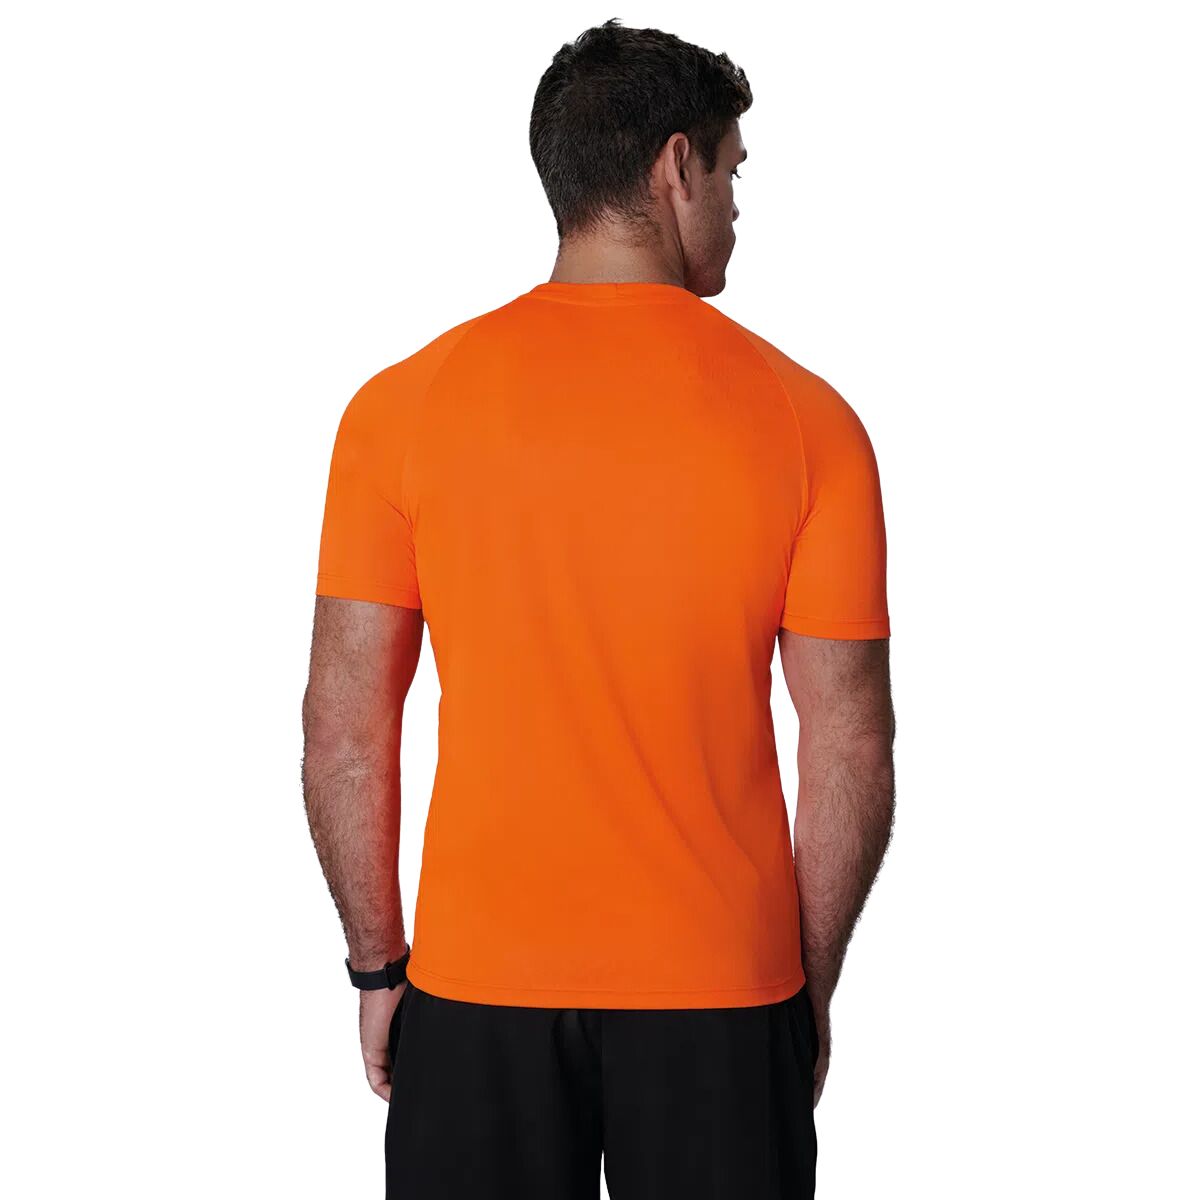 Camiseta masculina fitness Lupo Para Prática de esporte e musculação